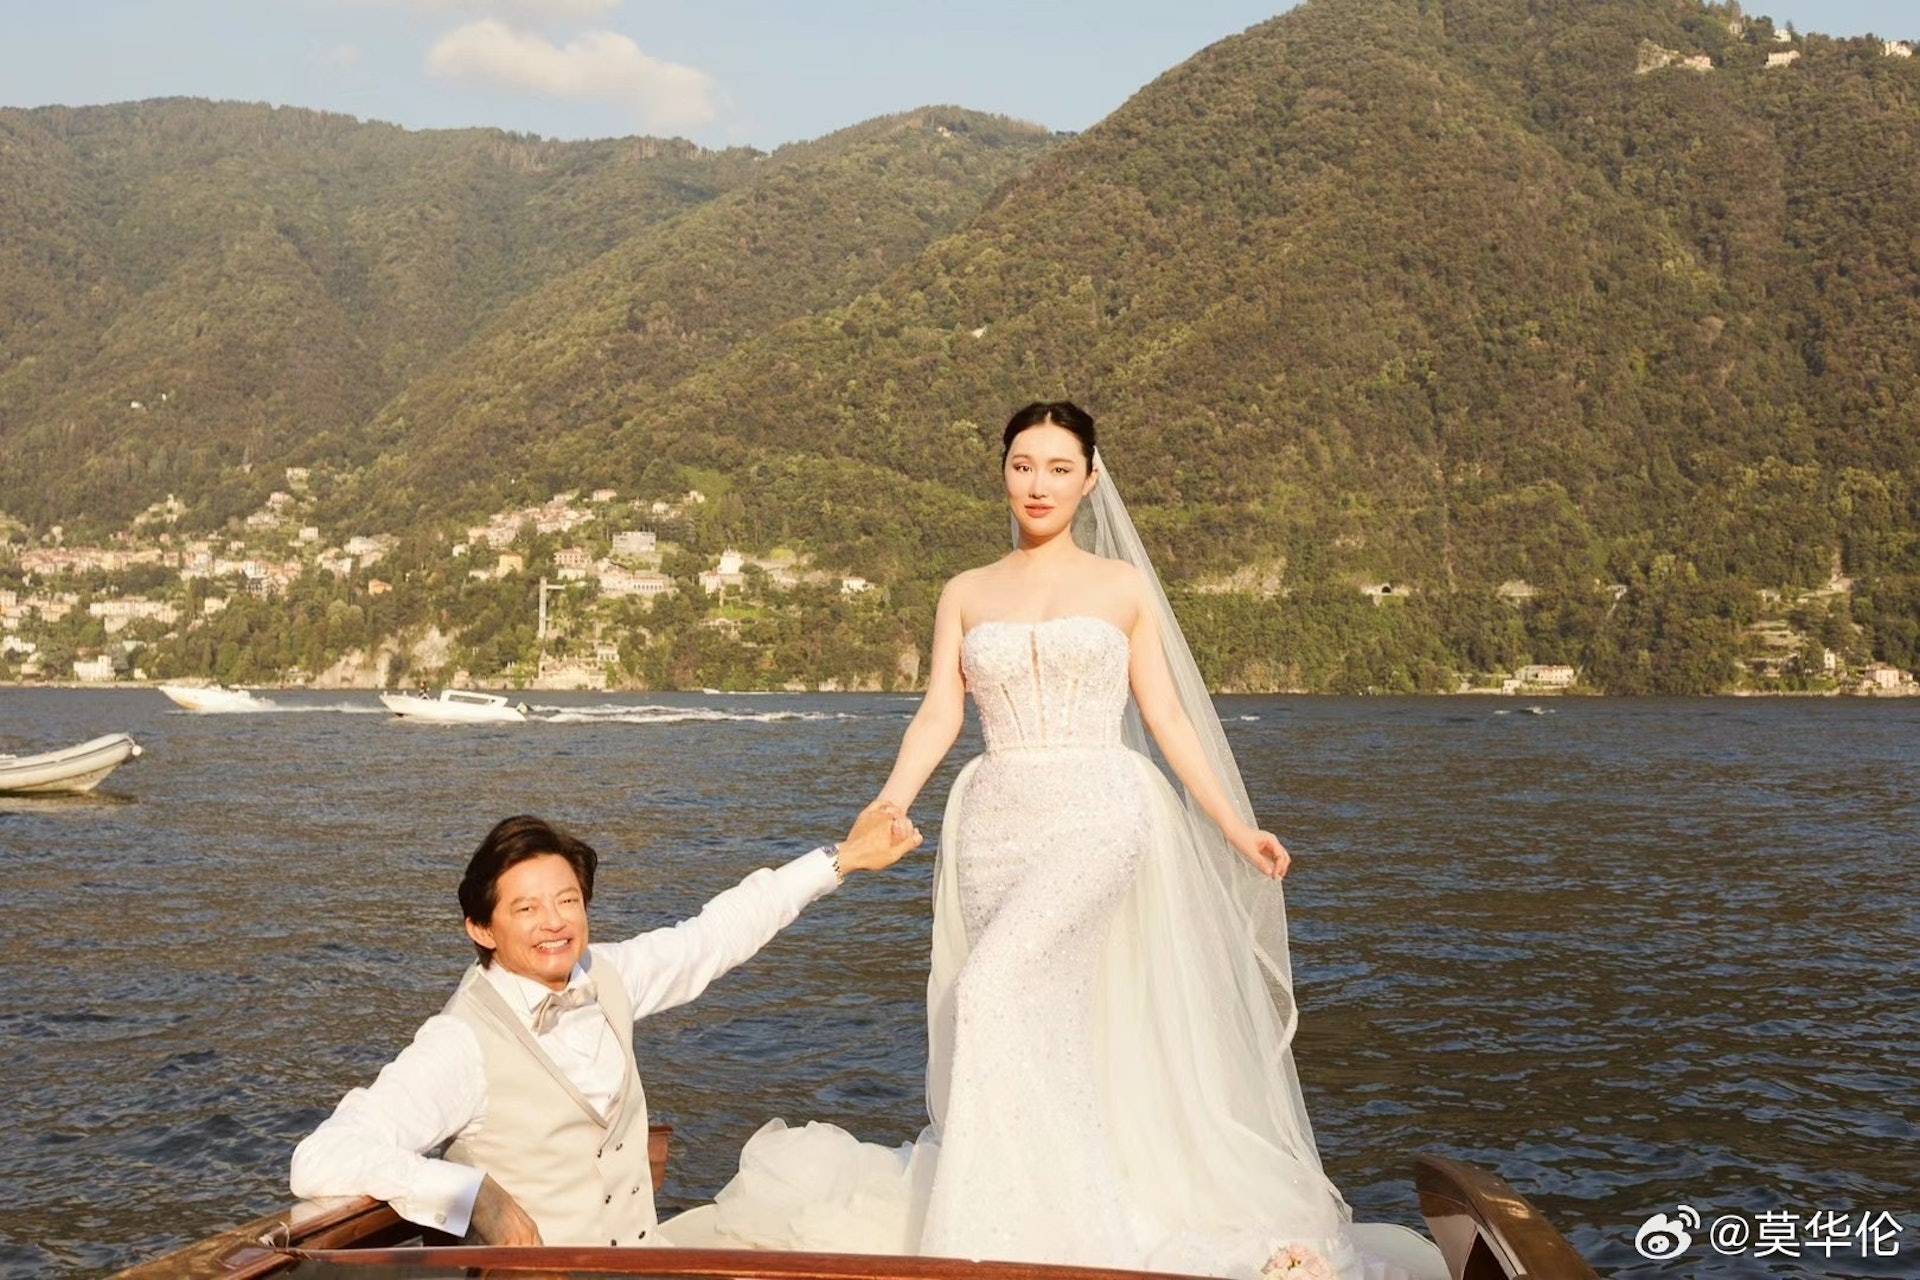 王冰冰 莫華倫 二人的婚禮在意大利的科莫湖舉行